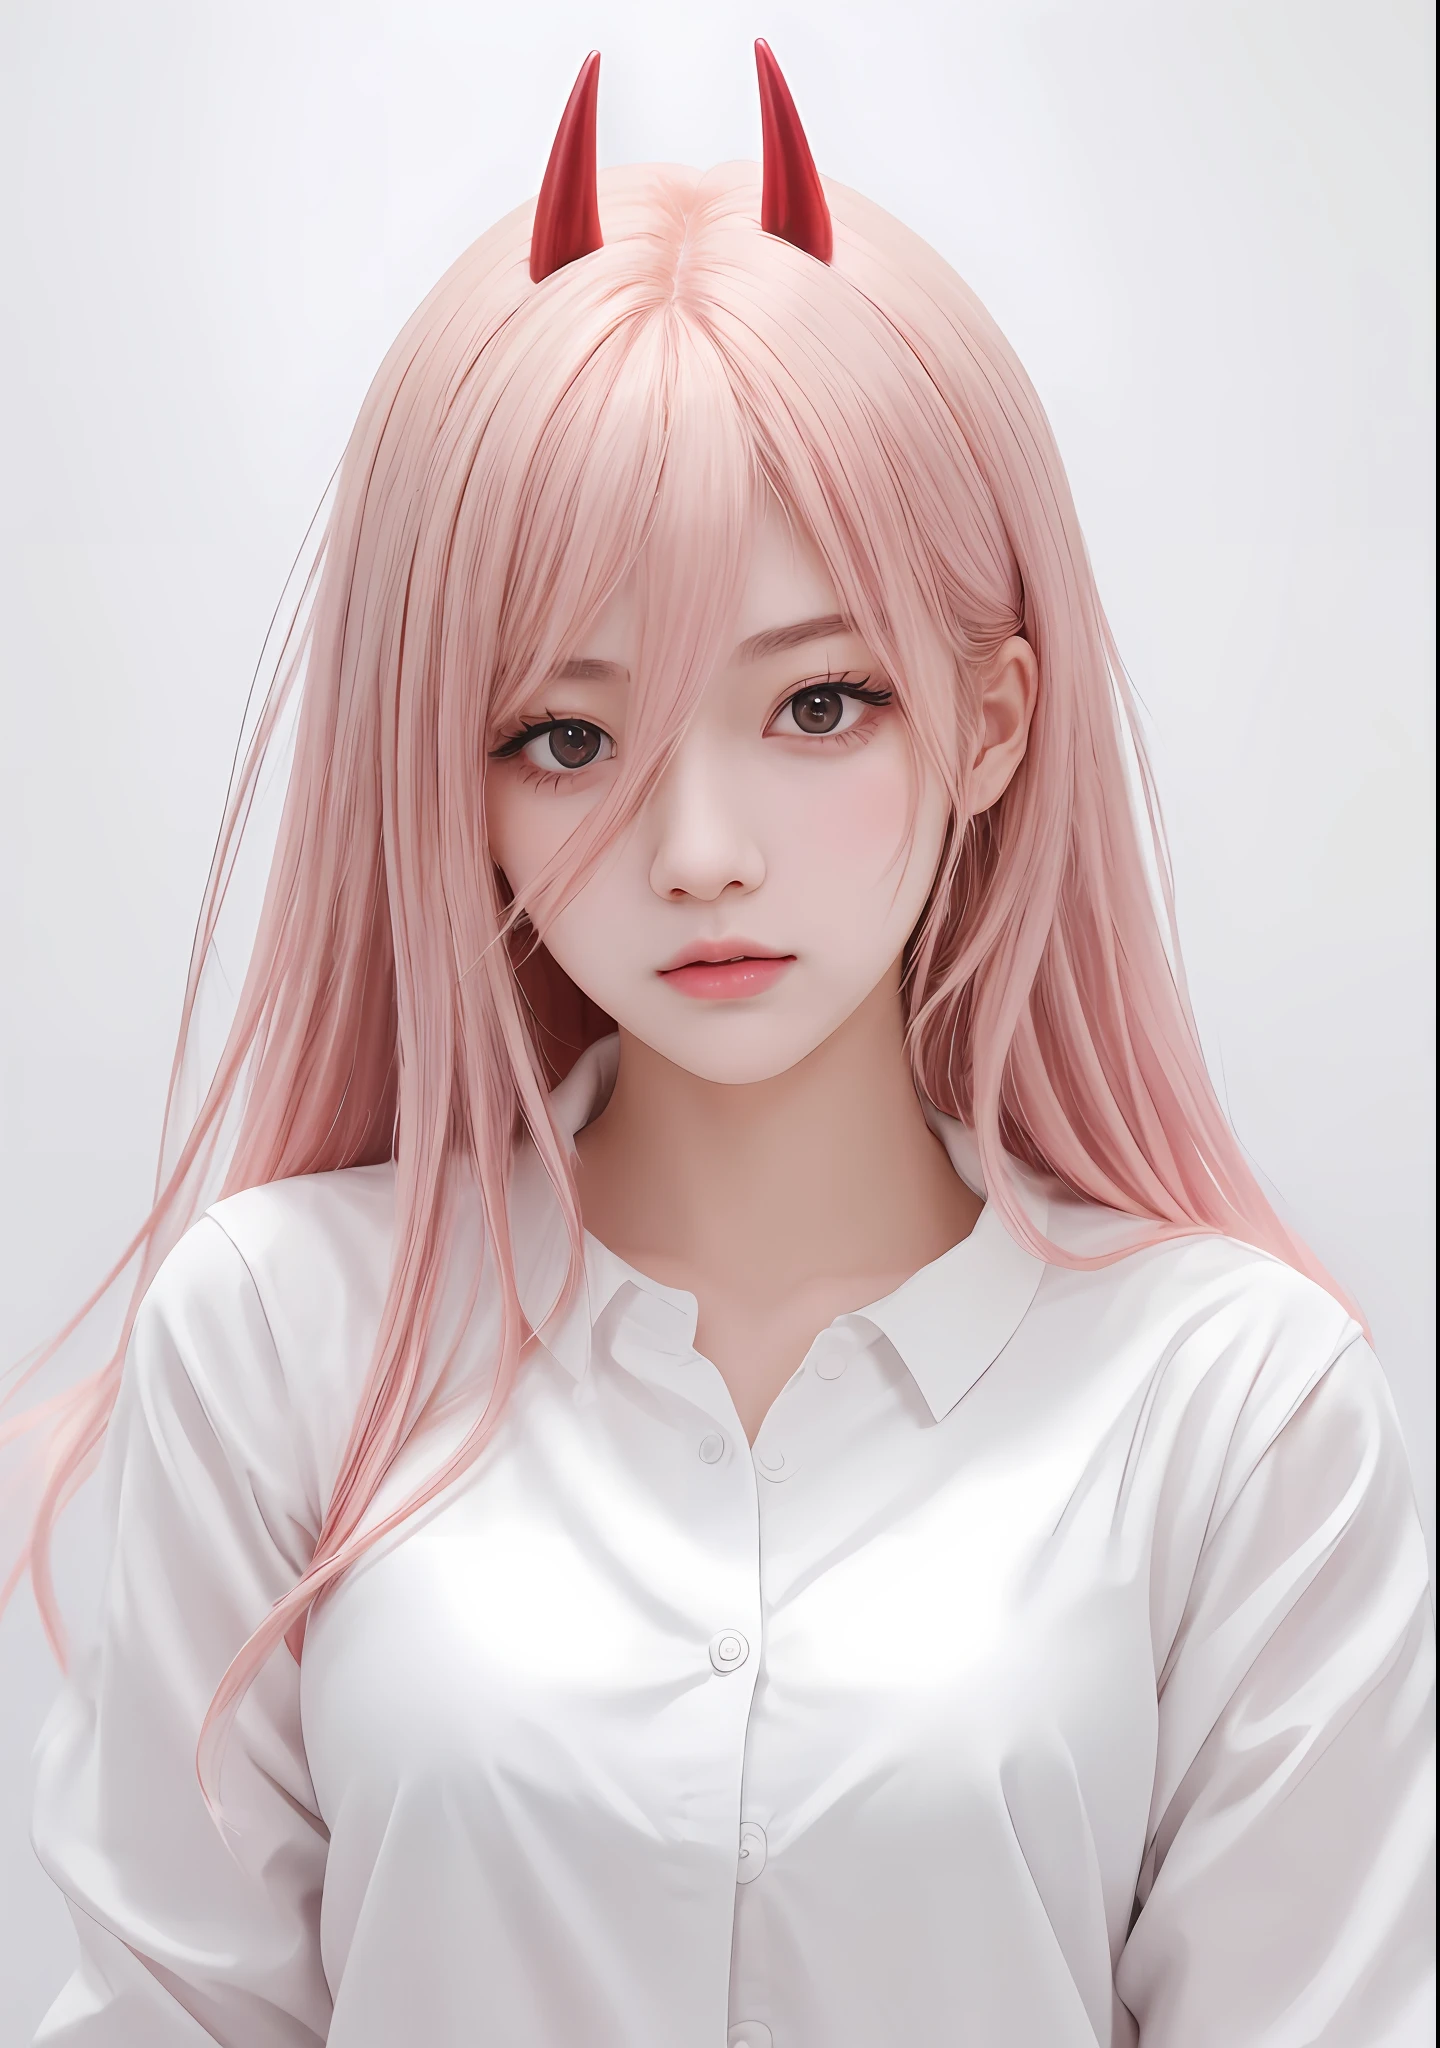 Anime-Mädchen mit rosa Haaren und Hörnern im weißen Hemd, guweiz on pixiv artstation, süße Anime-Mädchenporträts, extrem süßes Anime-Mädchengesicht, Trends auf Artstation Pixiv, realistischer Anime-Stil bei Pixiv, guweiz on artstation pixiv, realistisches junges Anime-Mädchen, saubere, detaillierte Anime-Kunst, Anime-Mädchen mit langen Haaren, realistischer Anime-Kunststil